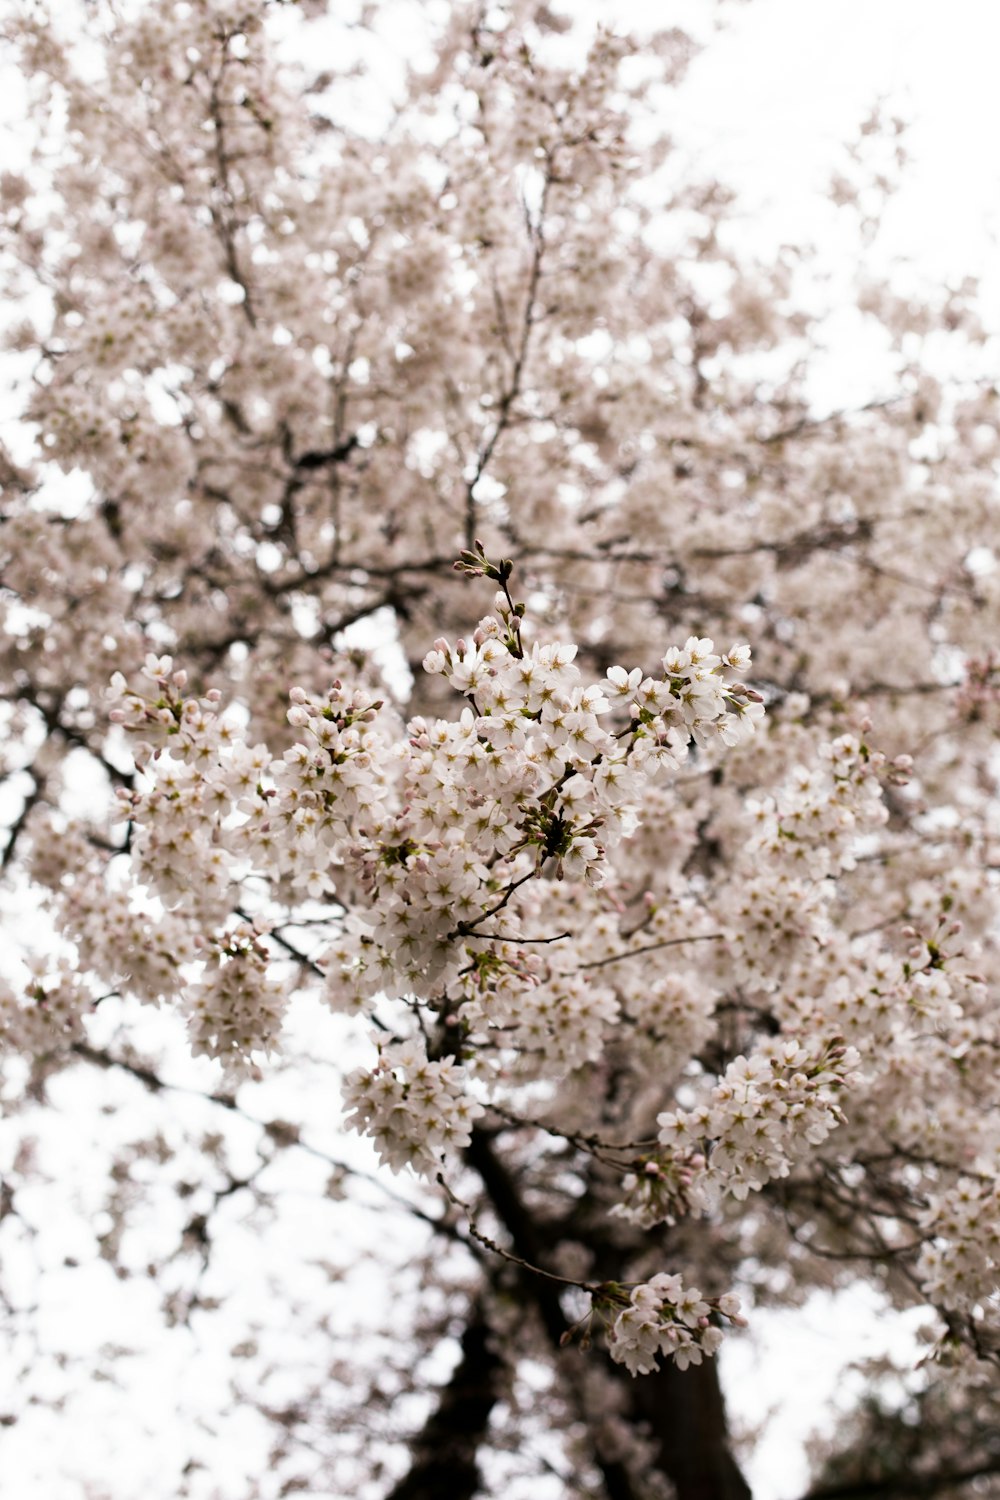 흰 꽃이있는 나무